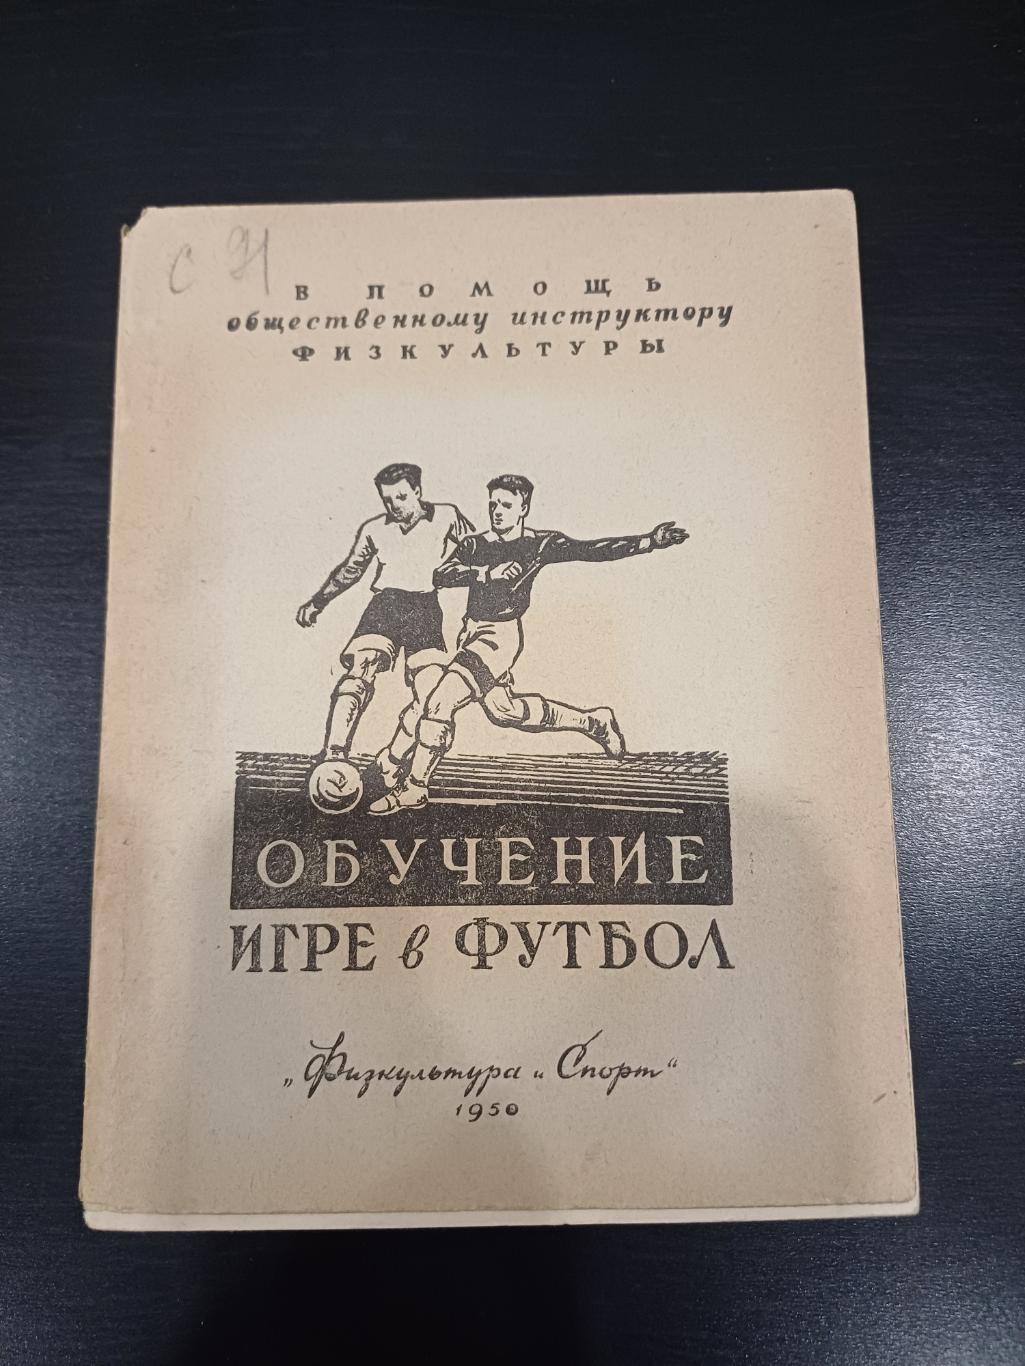 Обучение игре в футбол 1950